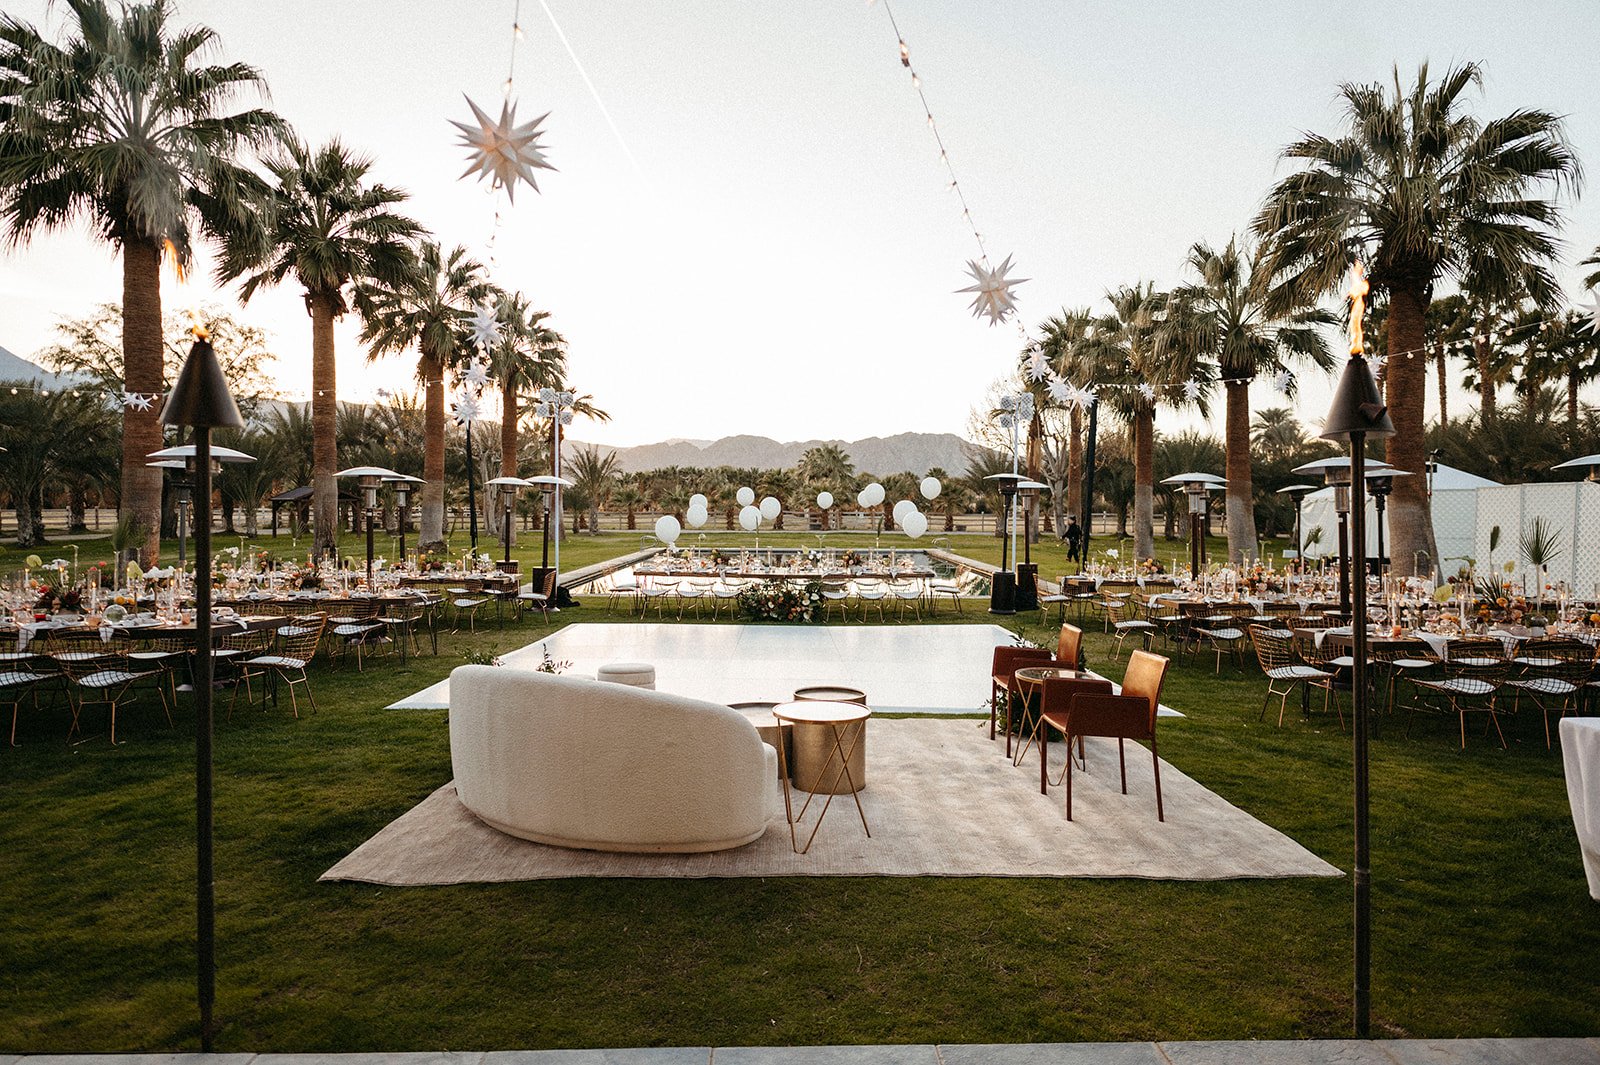  desert wedding palm springs lounge vignette  